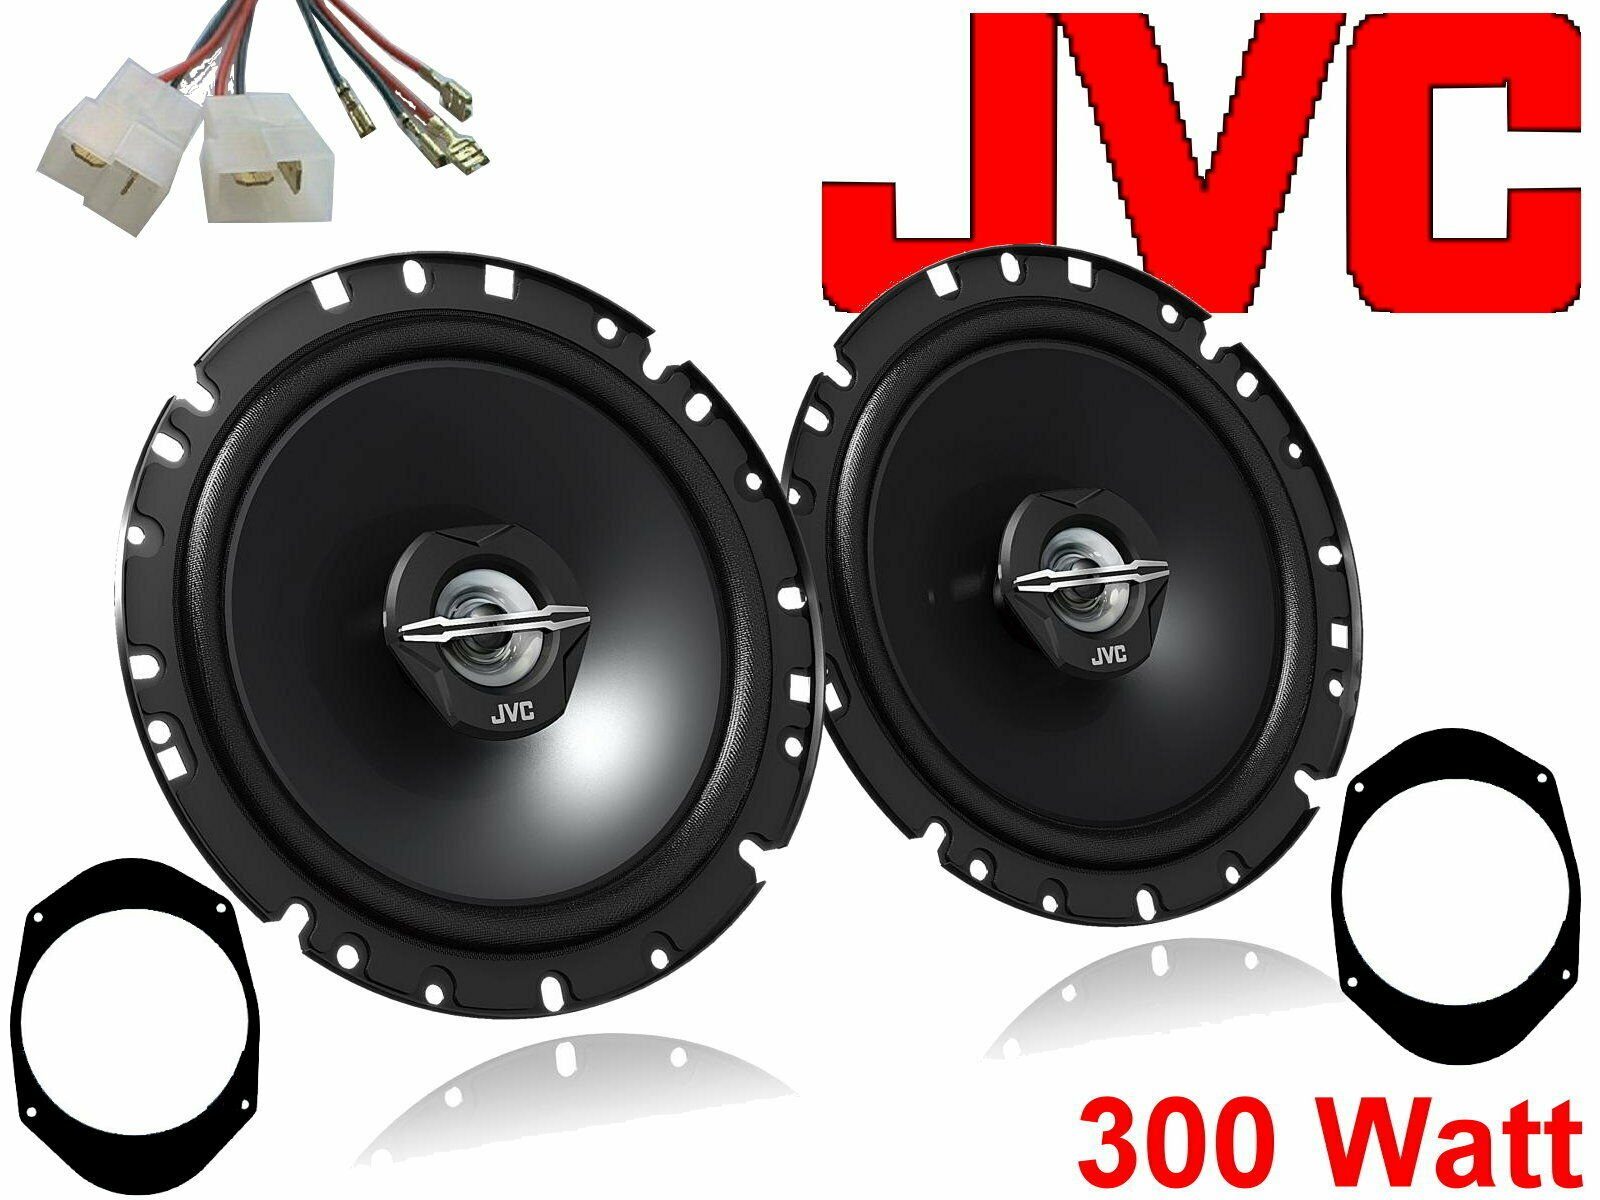 DSX JVC 300 W passend für Ford Fusion 02 - 12 Lautspr Auto-Lautsprecher (30 W)